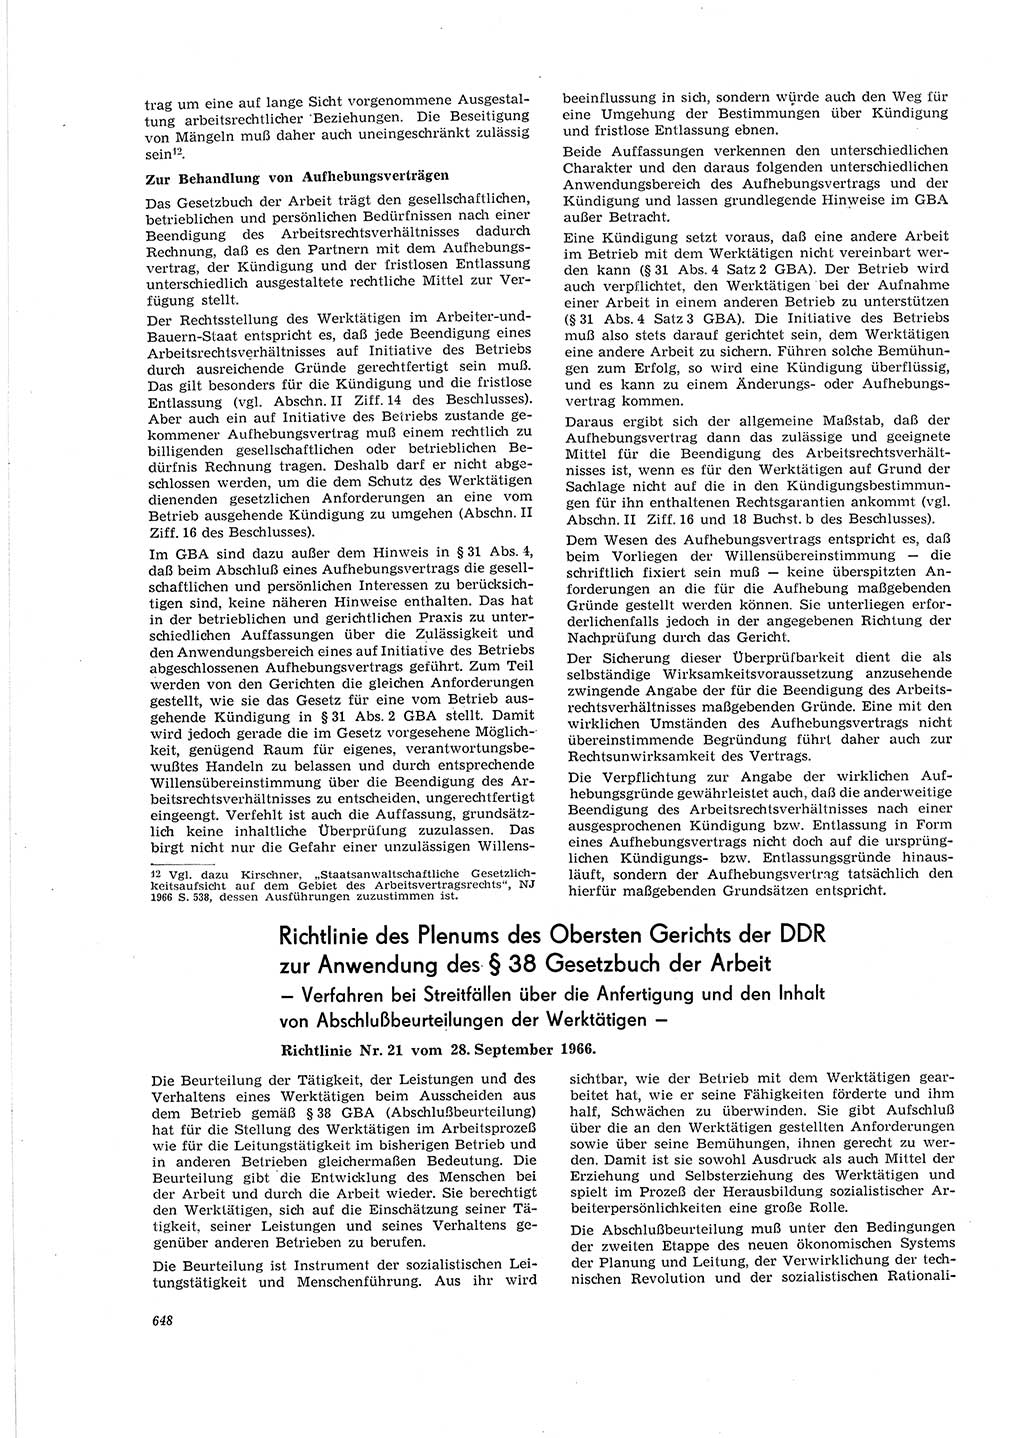 Neue Justiz (NJ), Zeitschrift für Recht und Rechtswissenschaft [Deutsche Demokratische Republik (DDR)], 20. Jahrgang 1966, Seite 648 (NJ DDR 1966, S. 648)